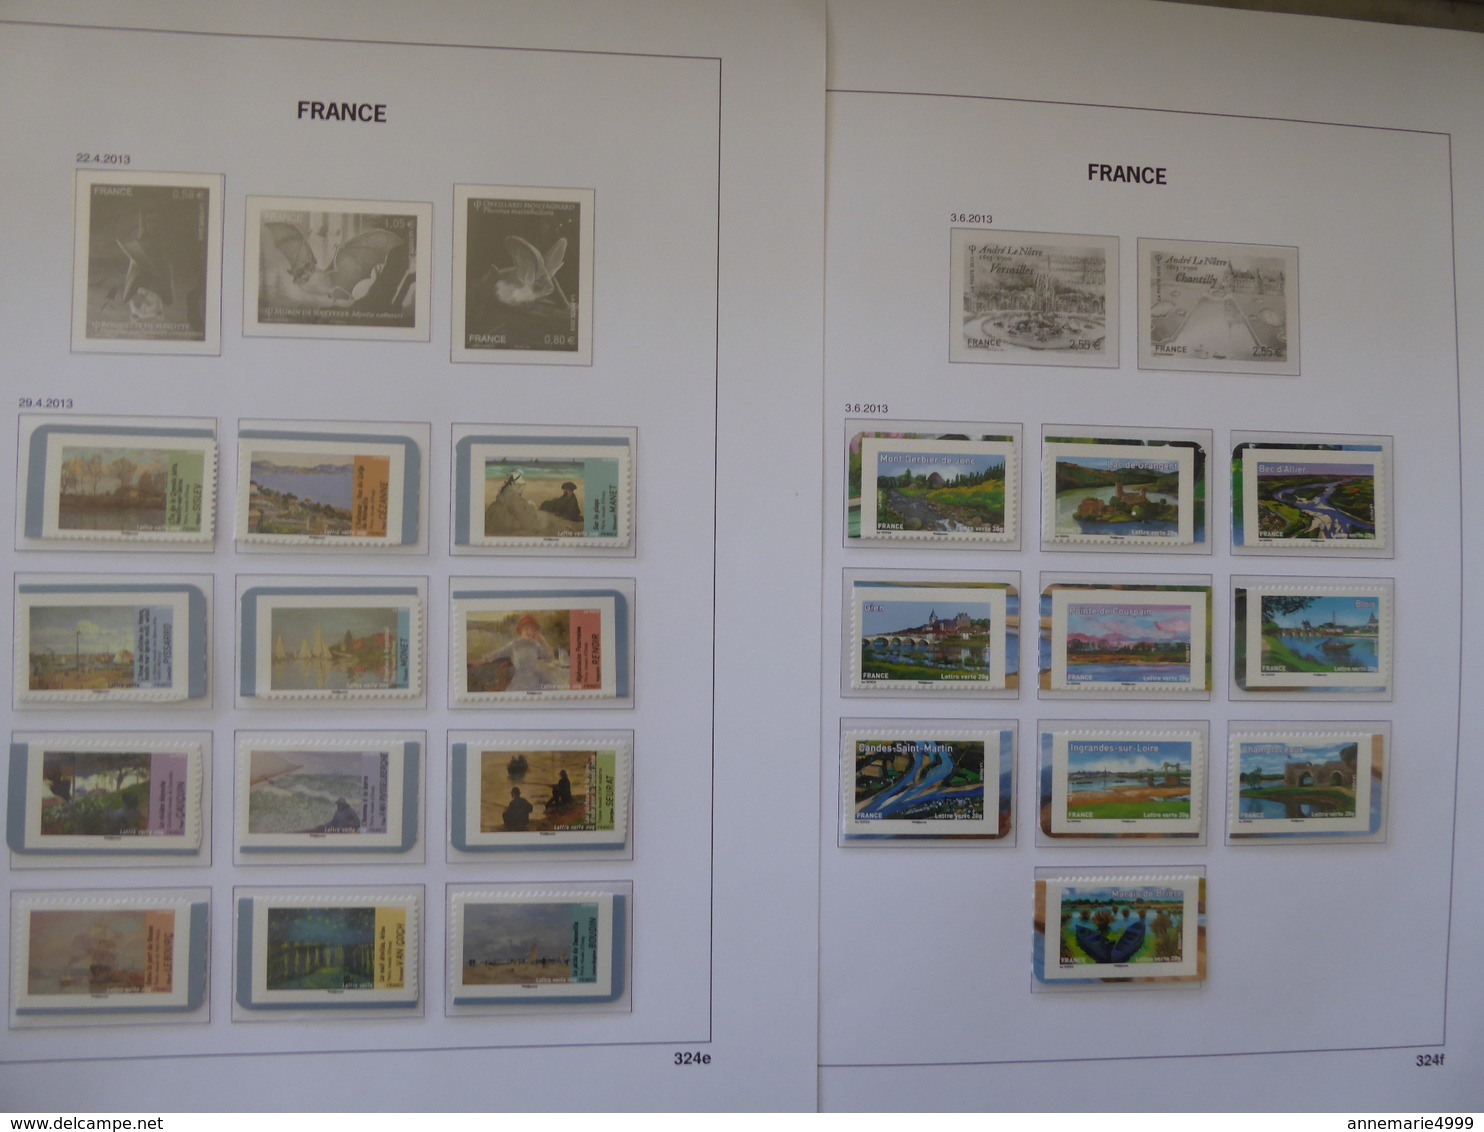 FRANCE 298 timbres TVP en séries complètes entre 2012 et 2014 Revoir le commentaire Faciale 392 € moins 50 %